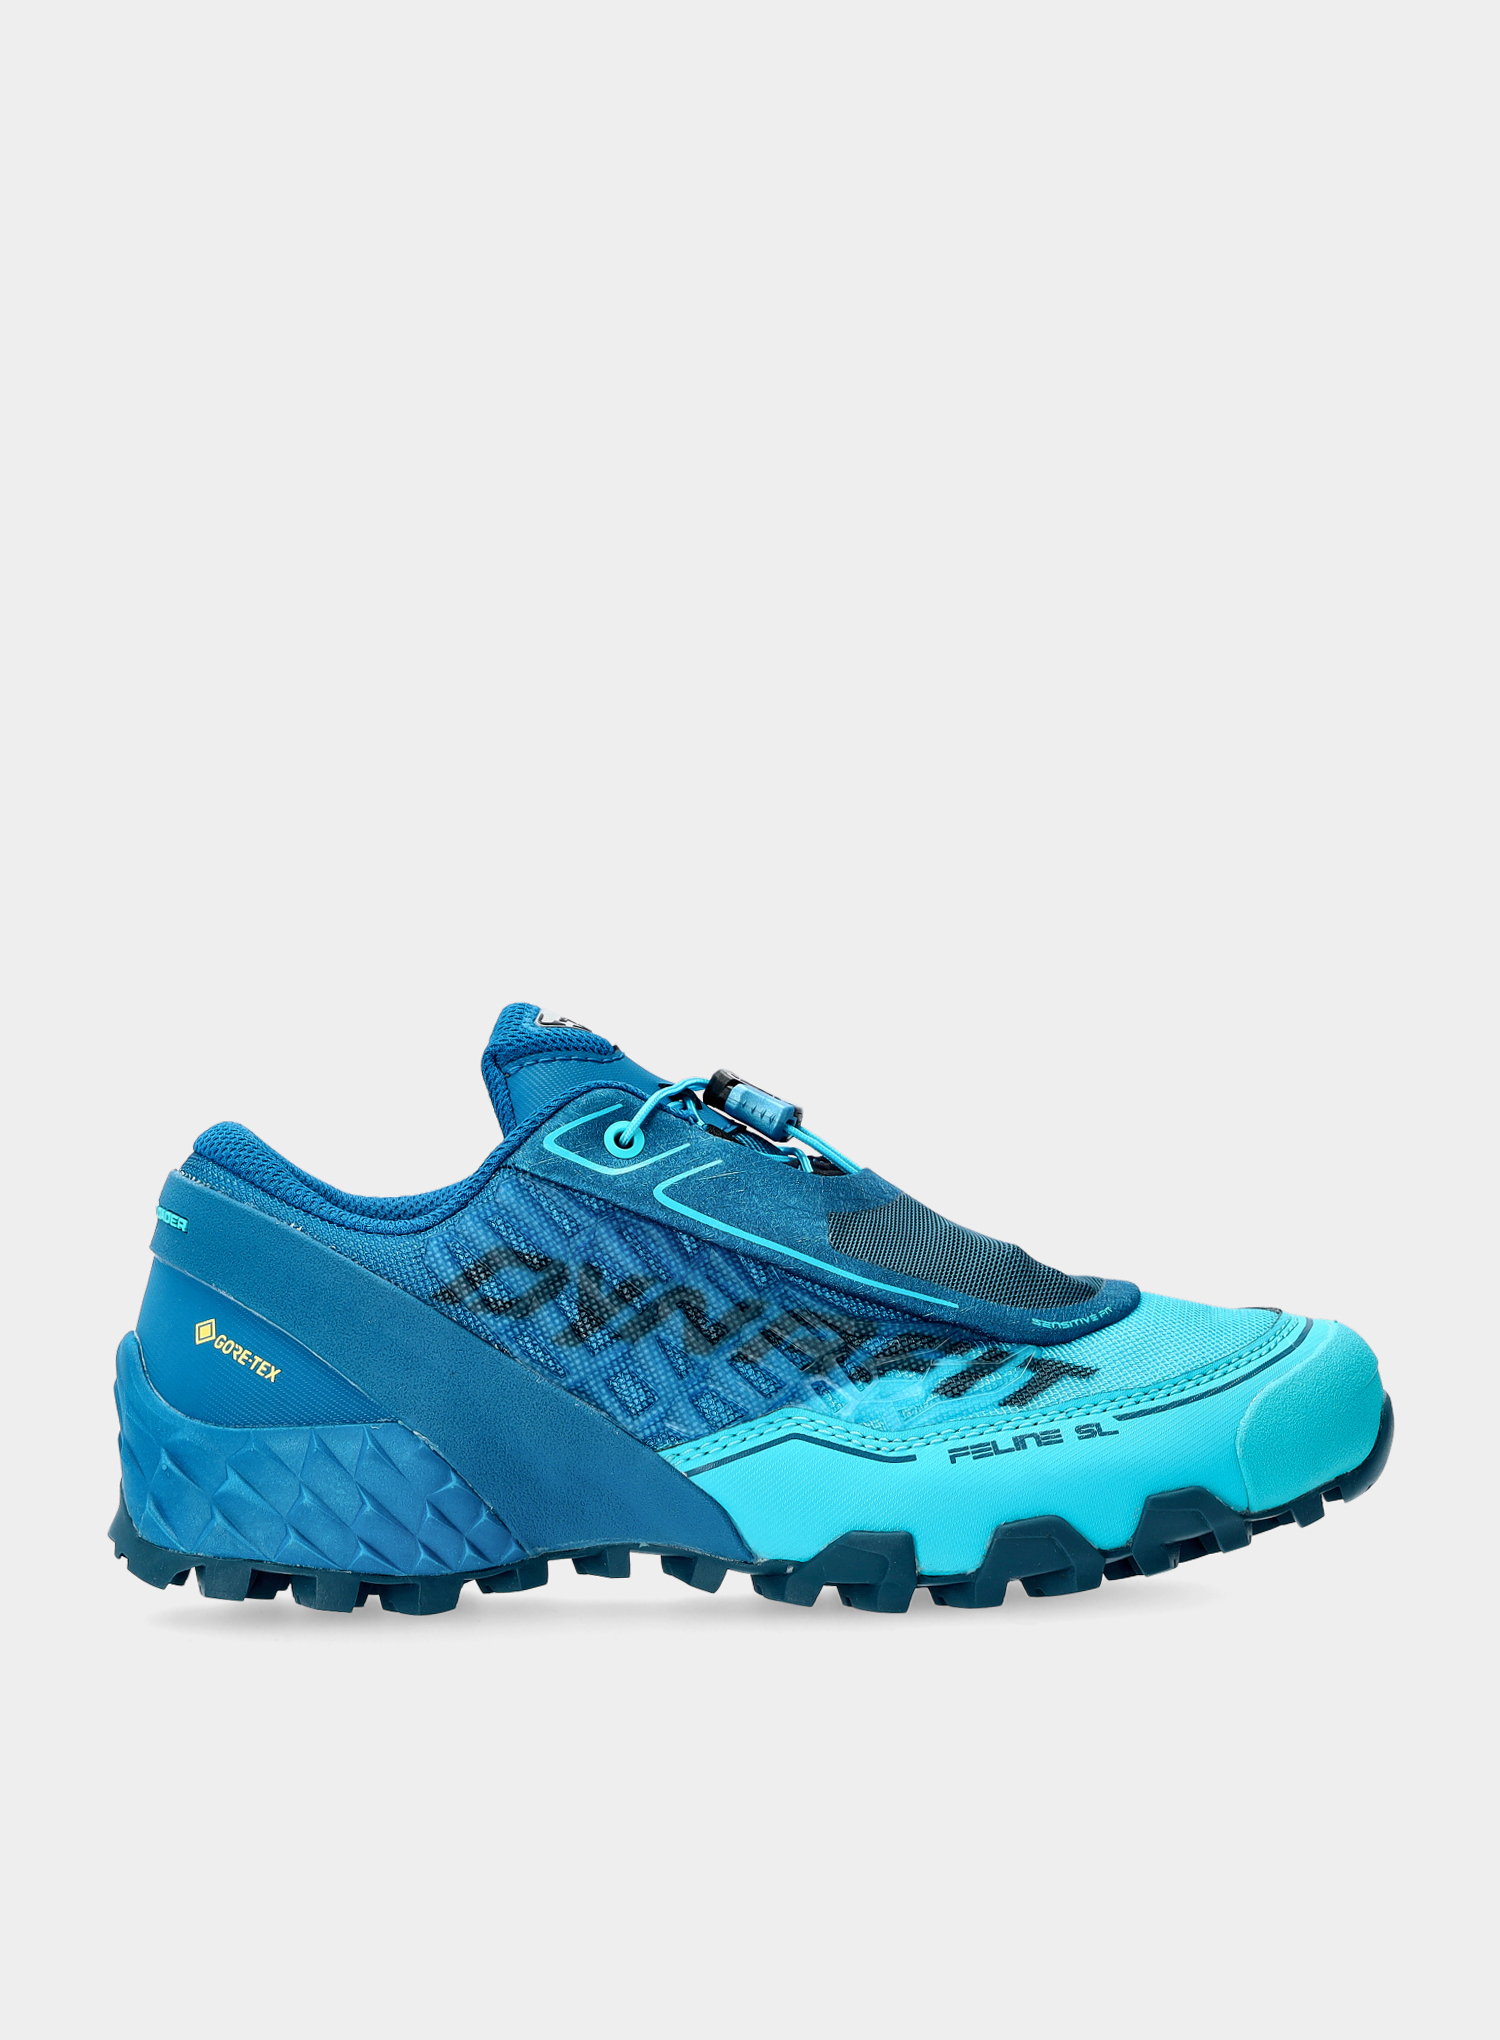 Nowe buty Dynafit FELINE SL W GTX Reef Blueberry, rozmiar 37/23,5 :: Sklep  Sportowy - outlet sportowy, koncówki kolekcji, wyprzedaże, narty, deski,  wiązania, sprzet narciarski, buty sportowe